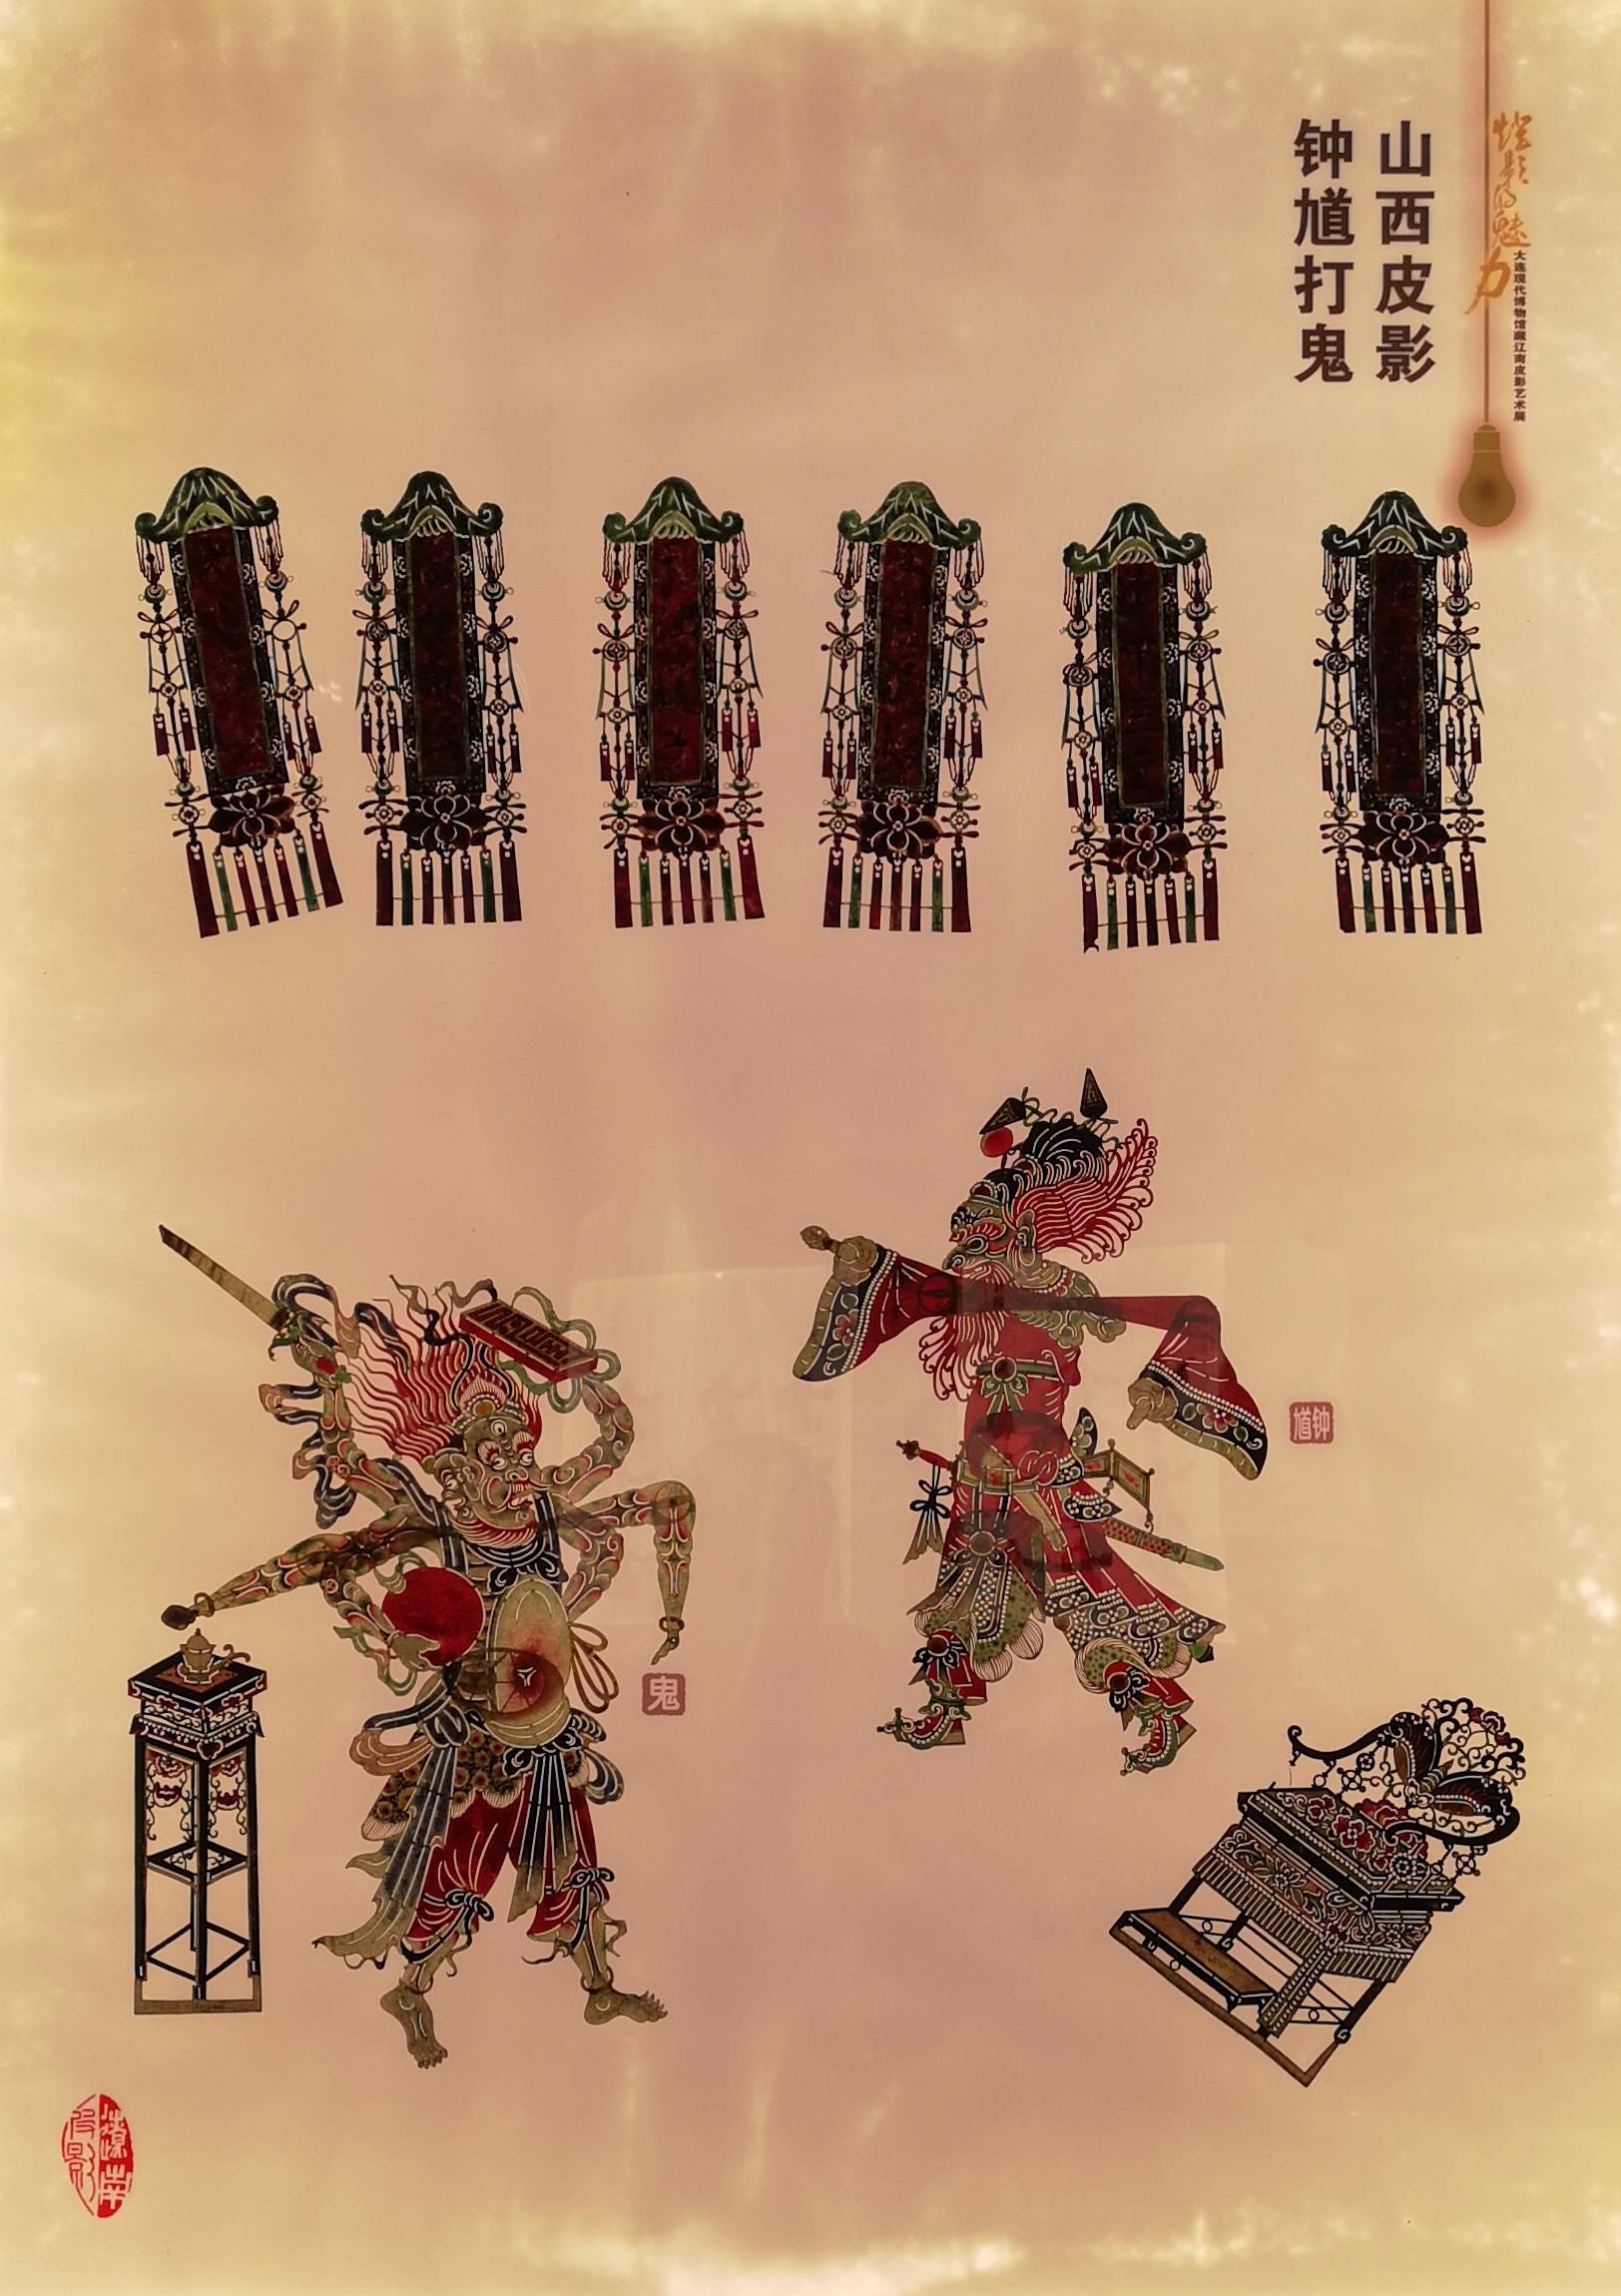 灯影的魅力:三百年的辽南皮影艺术来到了上海